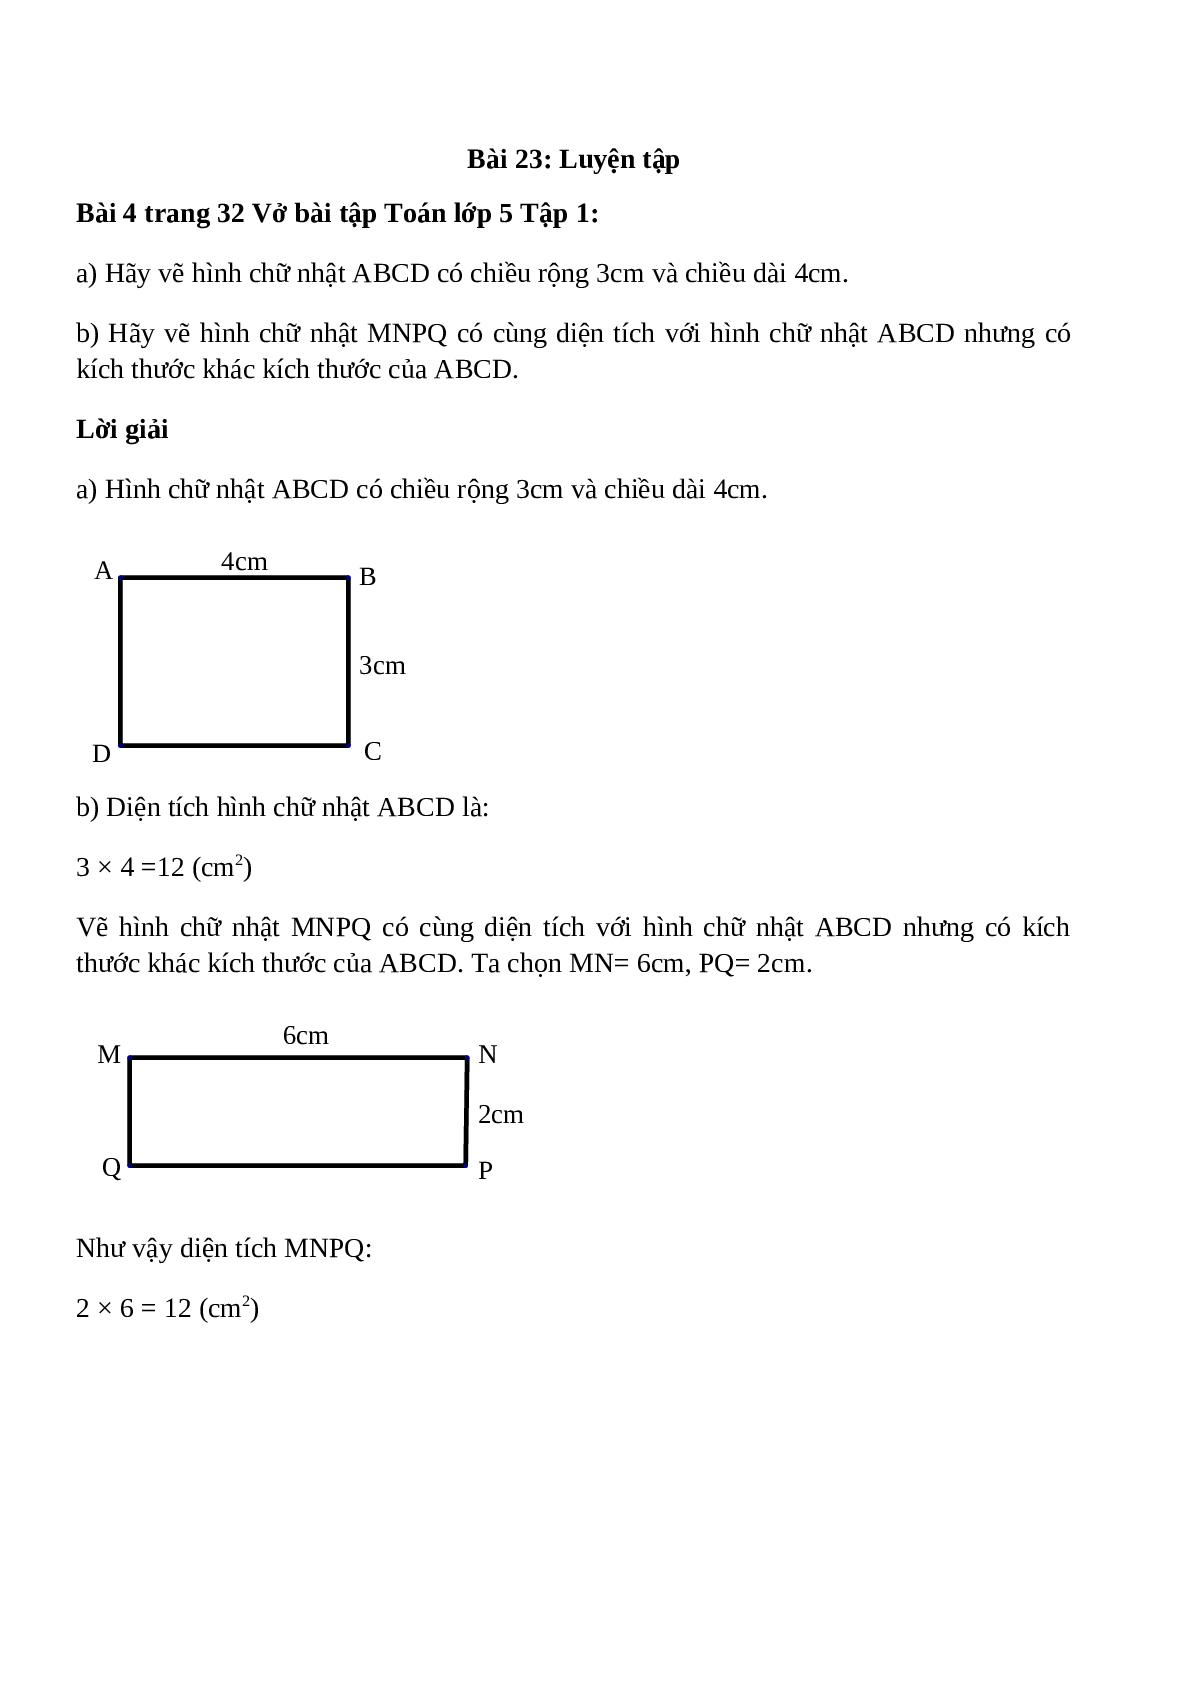 Hãy vẽ hình chữ nhật ABCD có chiều rộng 3cm và chiều dài 4cm (trang 1)